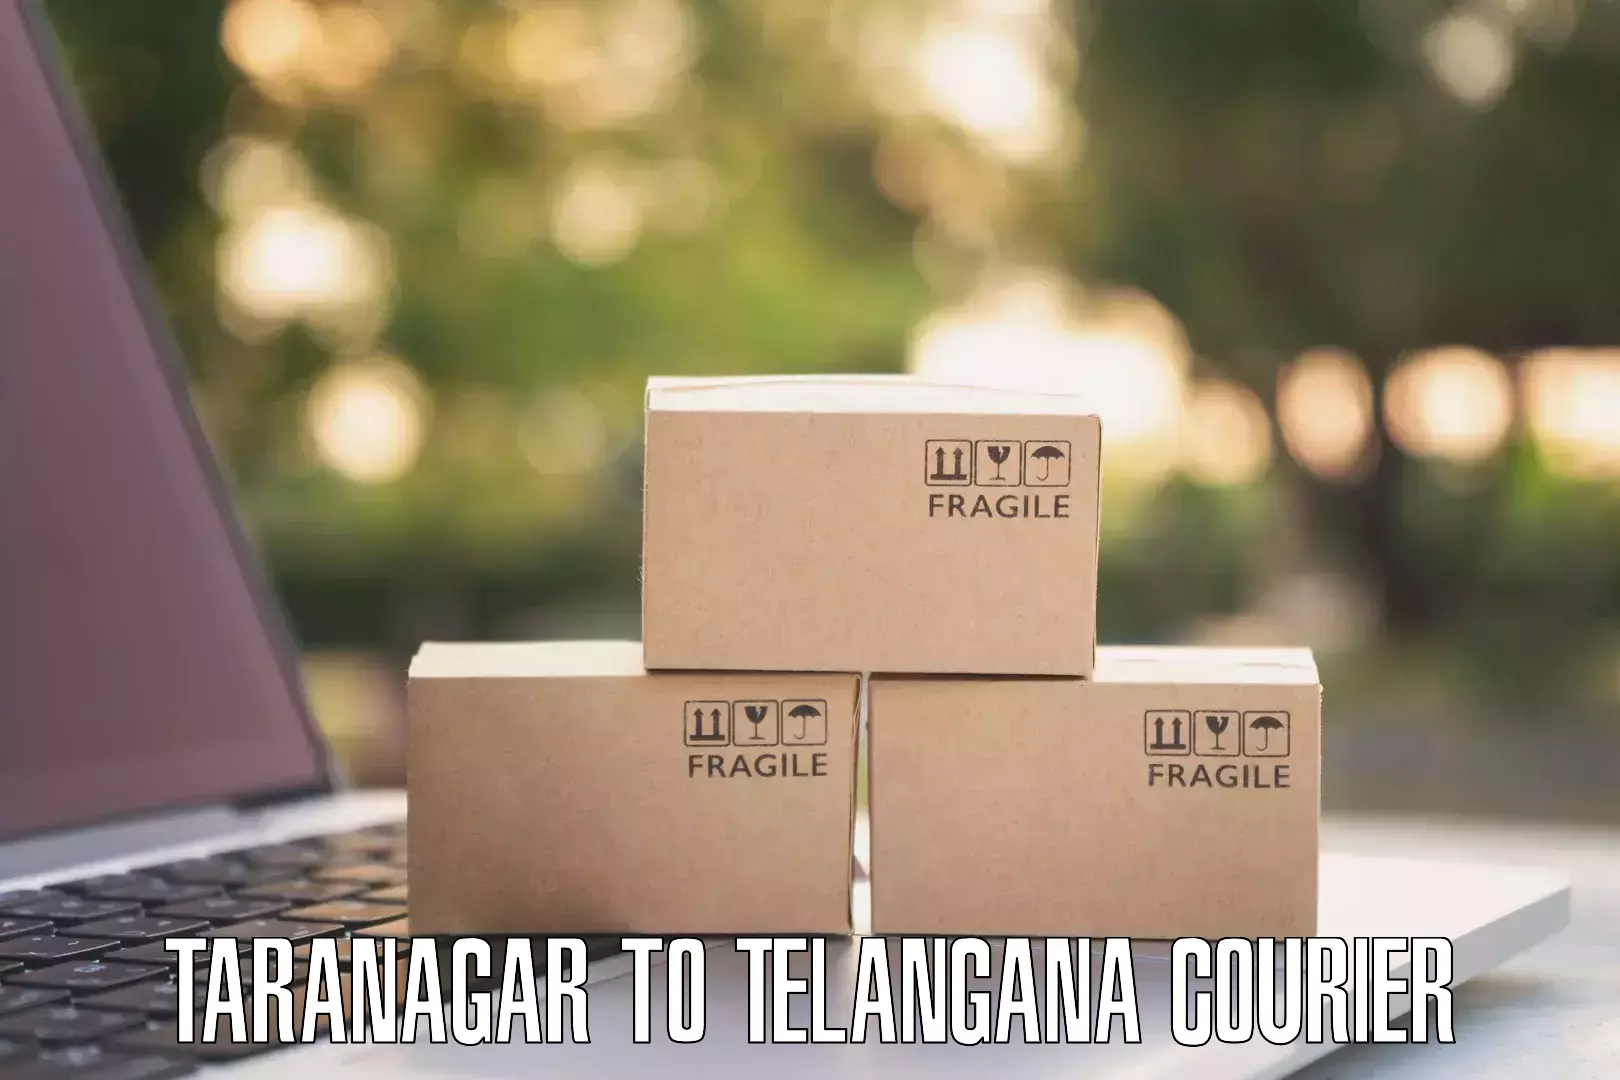 Efficient courier operations Taranagar to Achampet